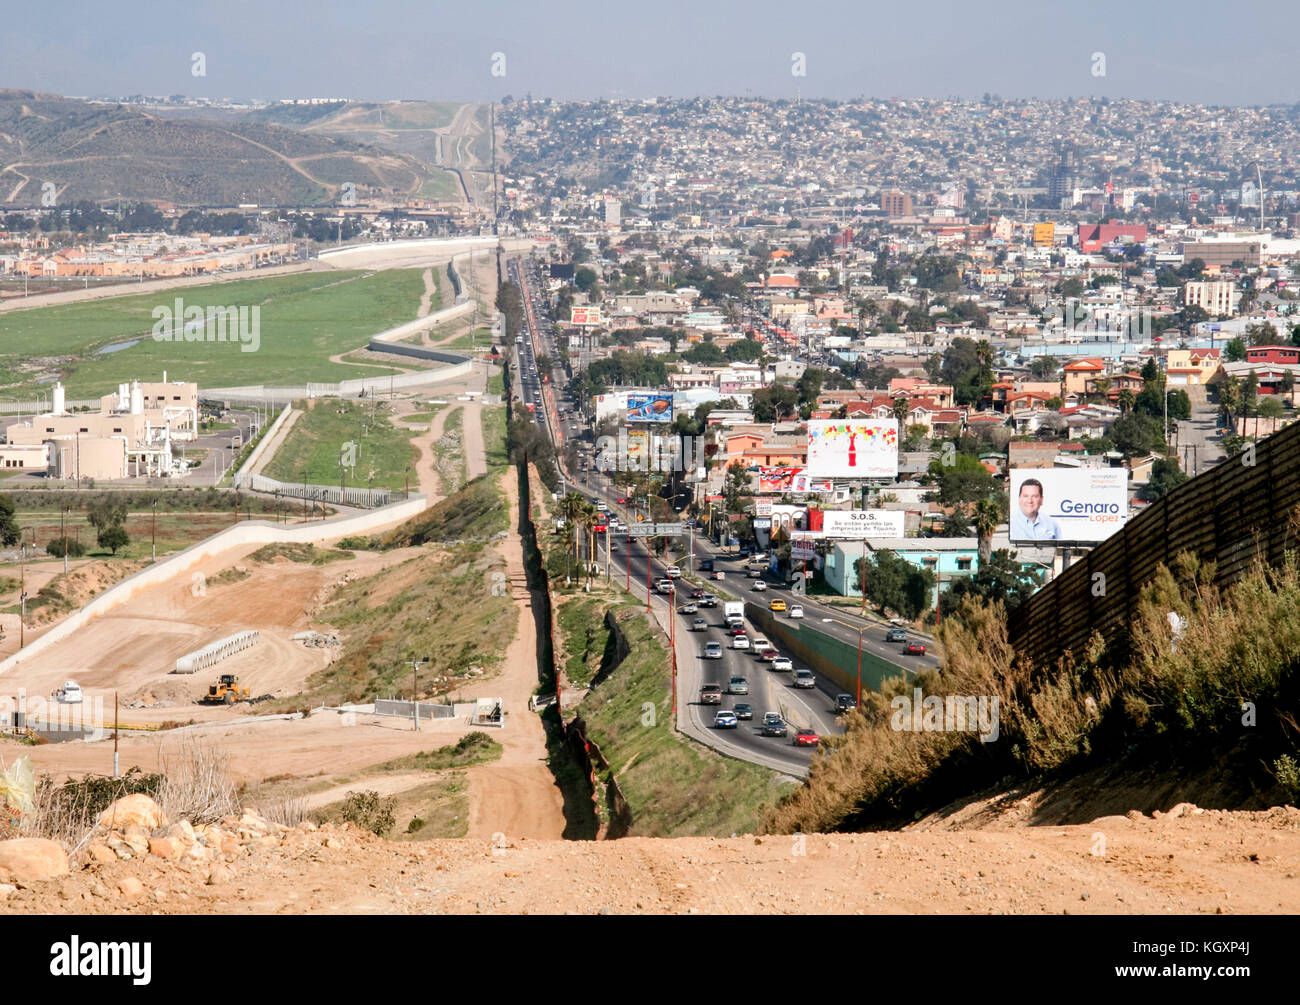 US-Mexiko internationale Grenze zwischen Tijuana, Mexiko (rechts) und San Diego, Kalifornien (Links) durch ein Wellblech Zaun von umfunktionierte Landung Matten, die nach dem Vietnamkrieg getrennt. Weitere Informationen finden Sie unten. Stockfoto